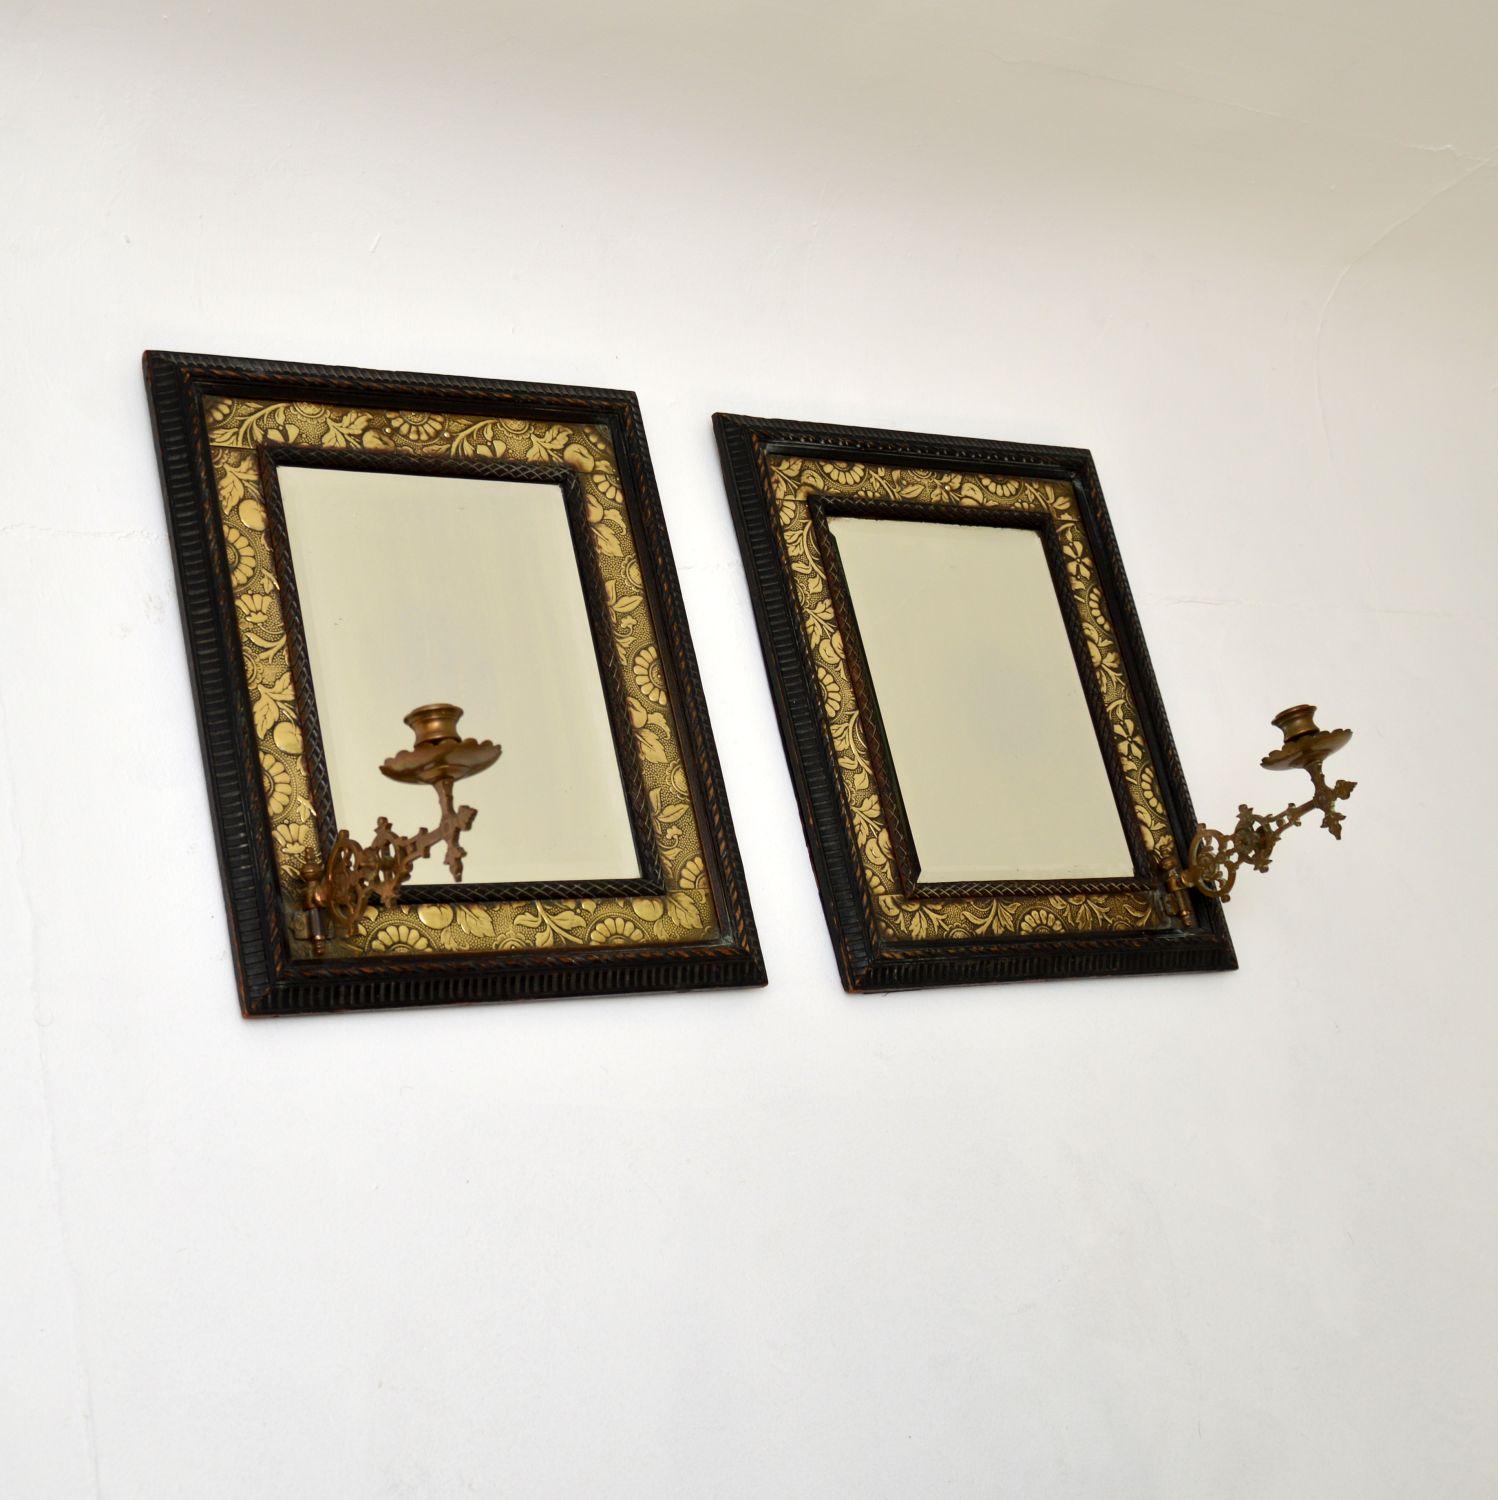 Ein hervorragendes Paar originaler antiker viktorianischer Spiegel in Messing und geschnitzten ebonisierten Holzrahmen. Sie wurden in England hergestellt und stammen aus der Zeit um 1880.

Sie haben ein recht ungewöhnliches Design und sind von